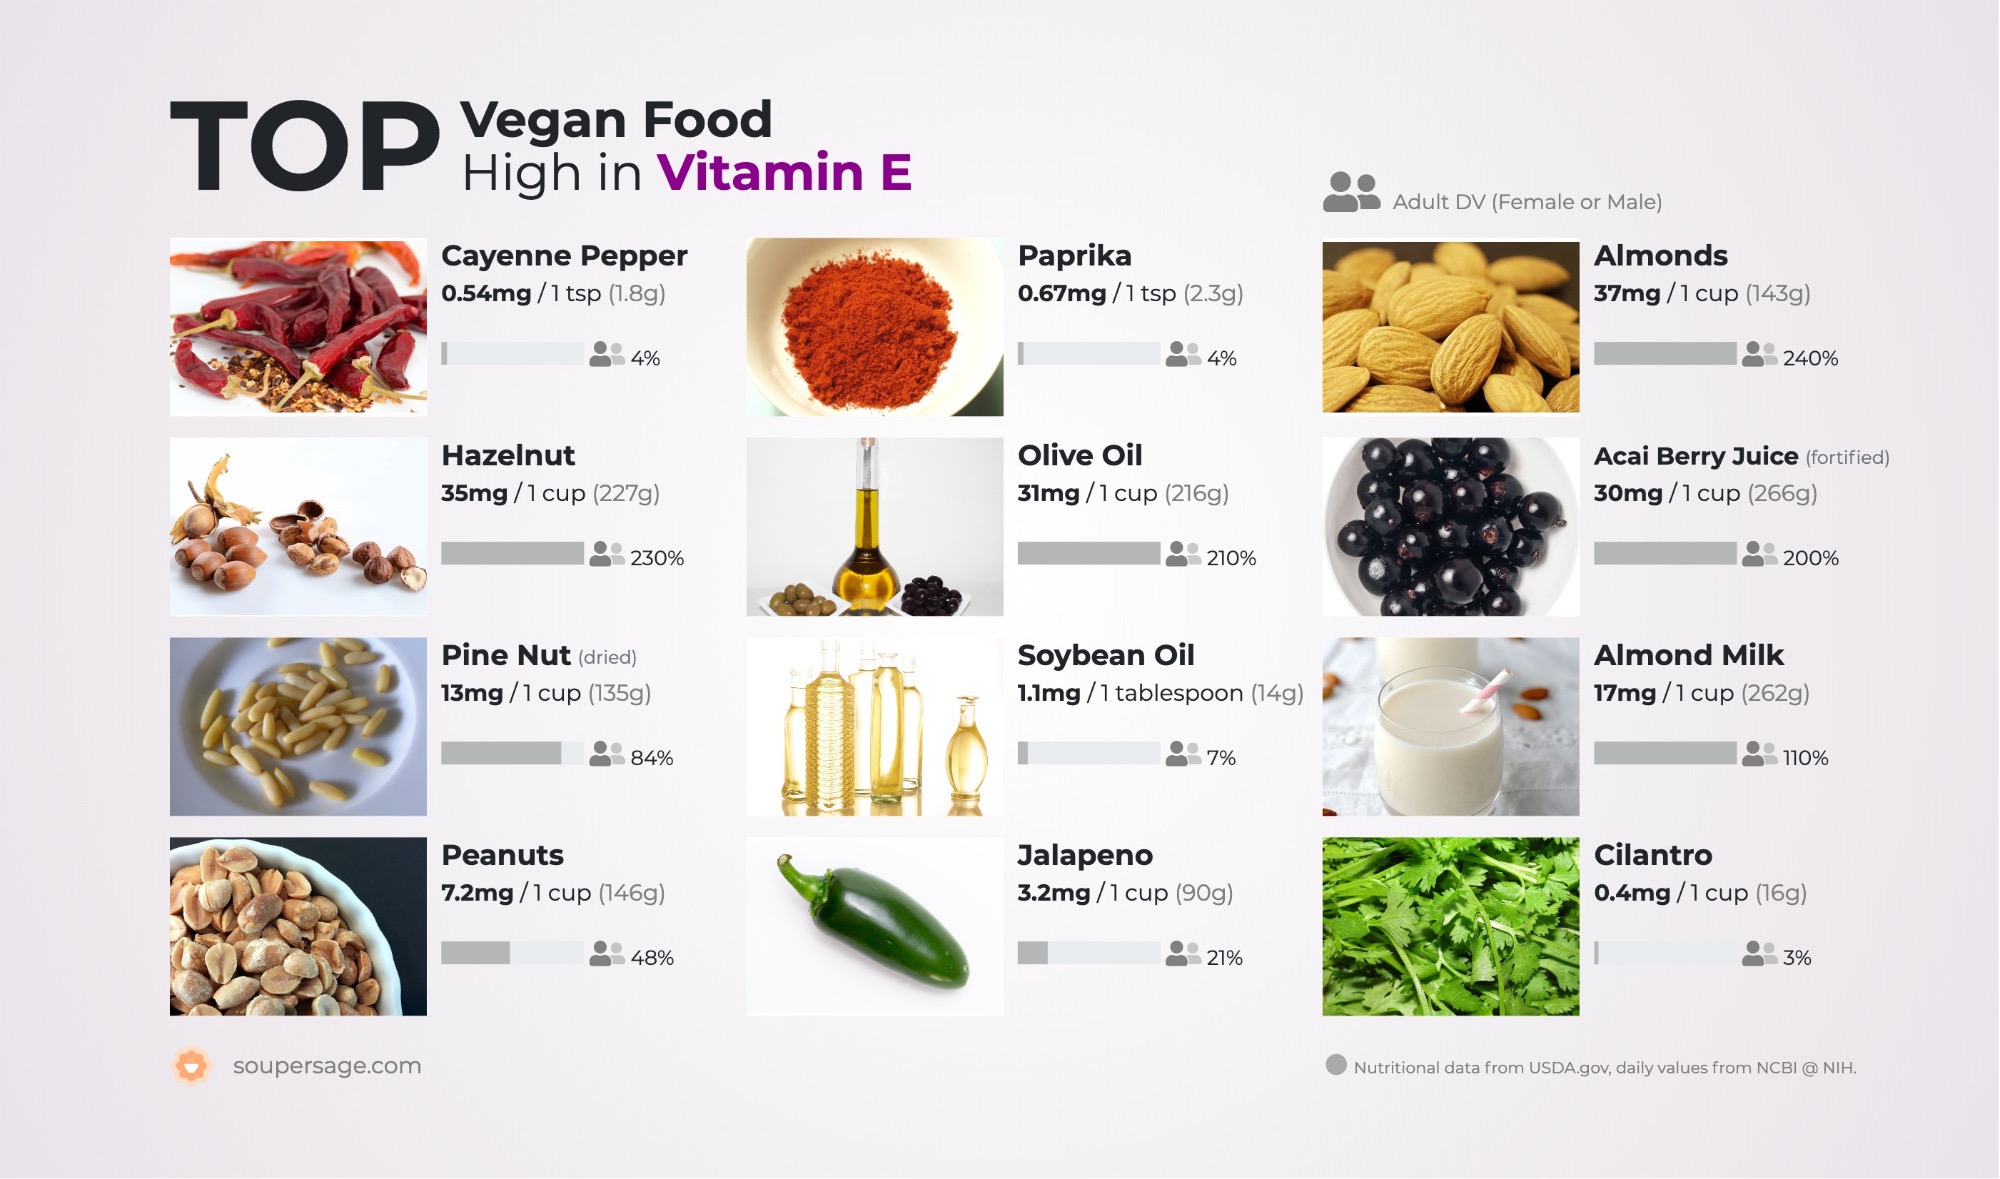 Top Vegan Food High in Vitamin E